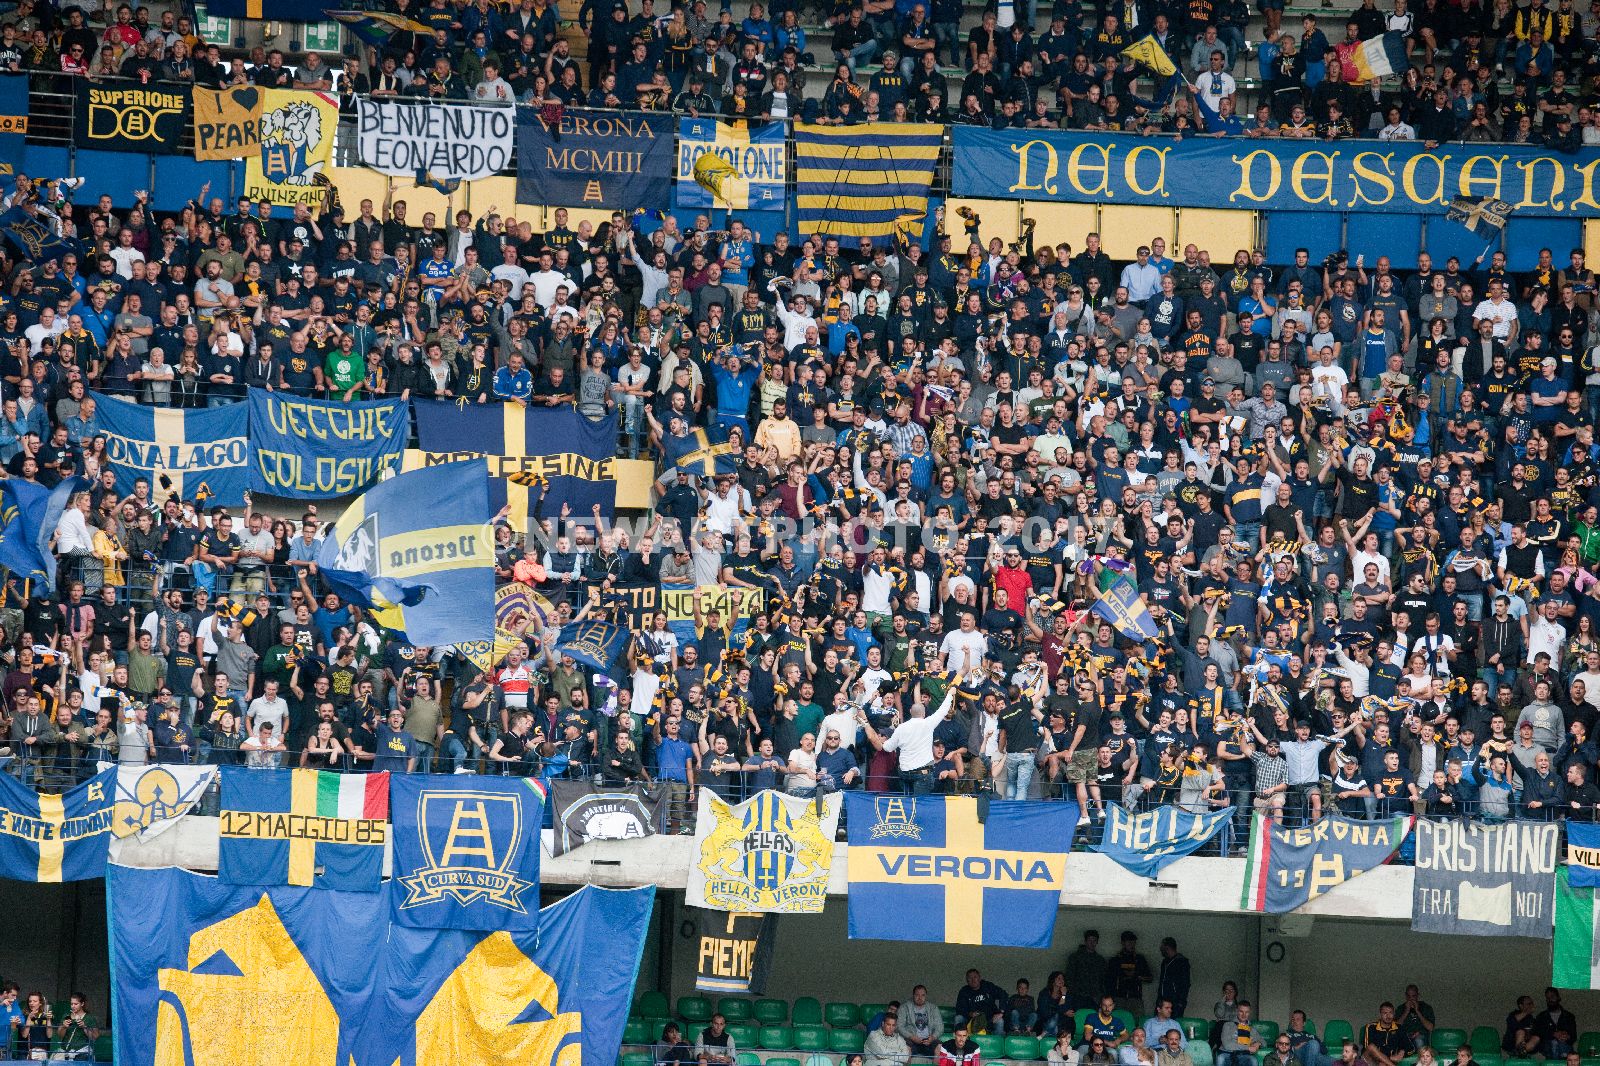 Le formazioni ufficiali di Verona-Pescara